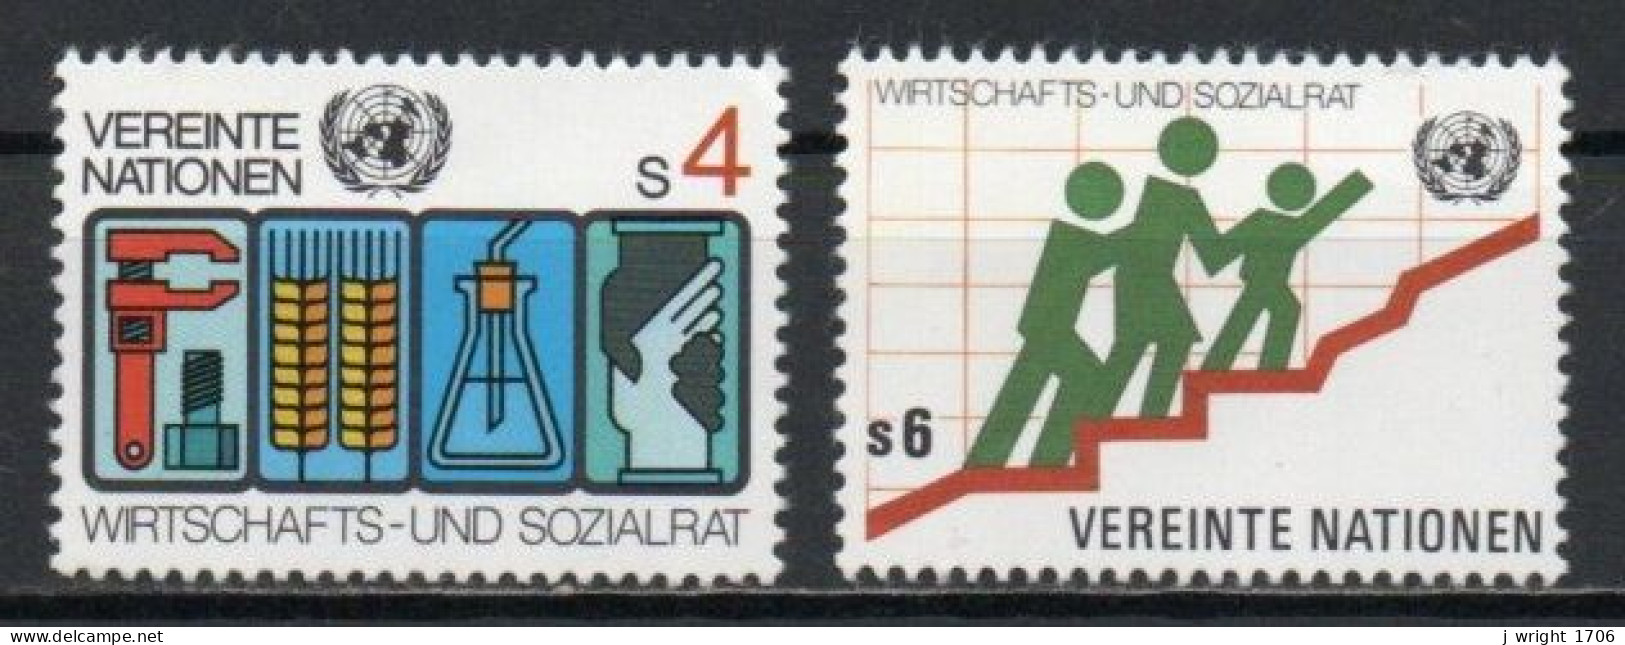 UN/Vienna, 1980, Economic & Social Council, Set, MNH - Unused Stamps